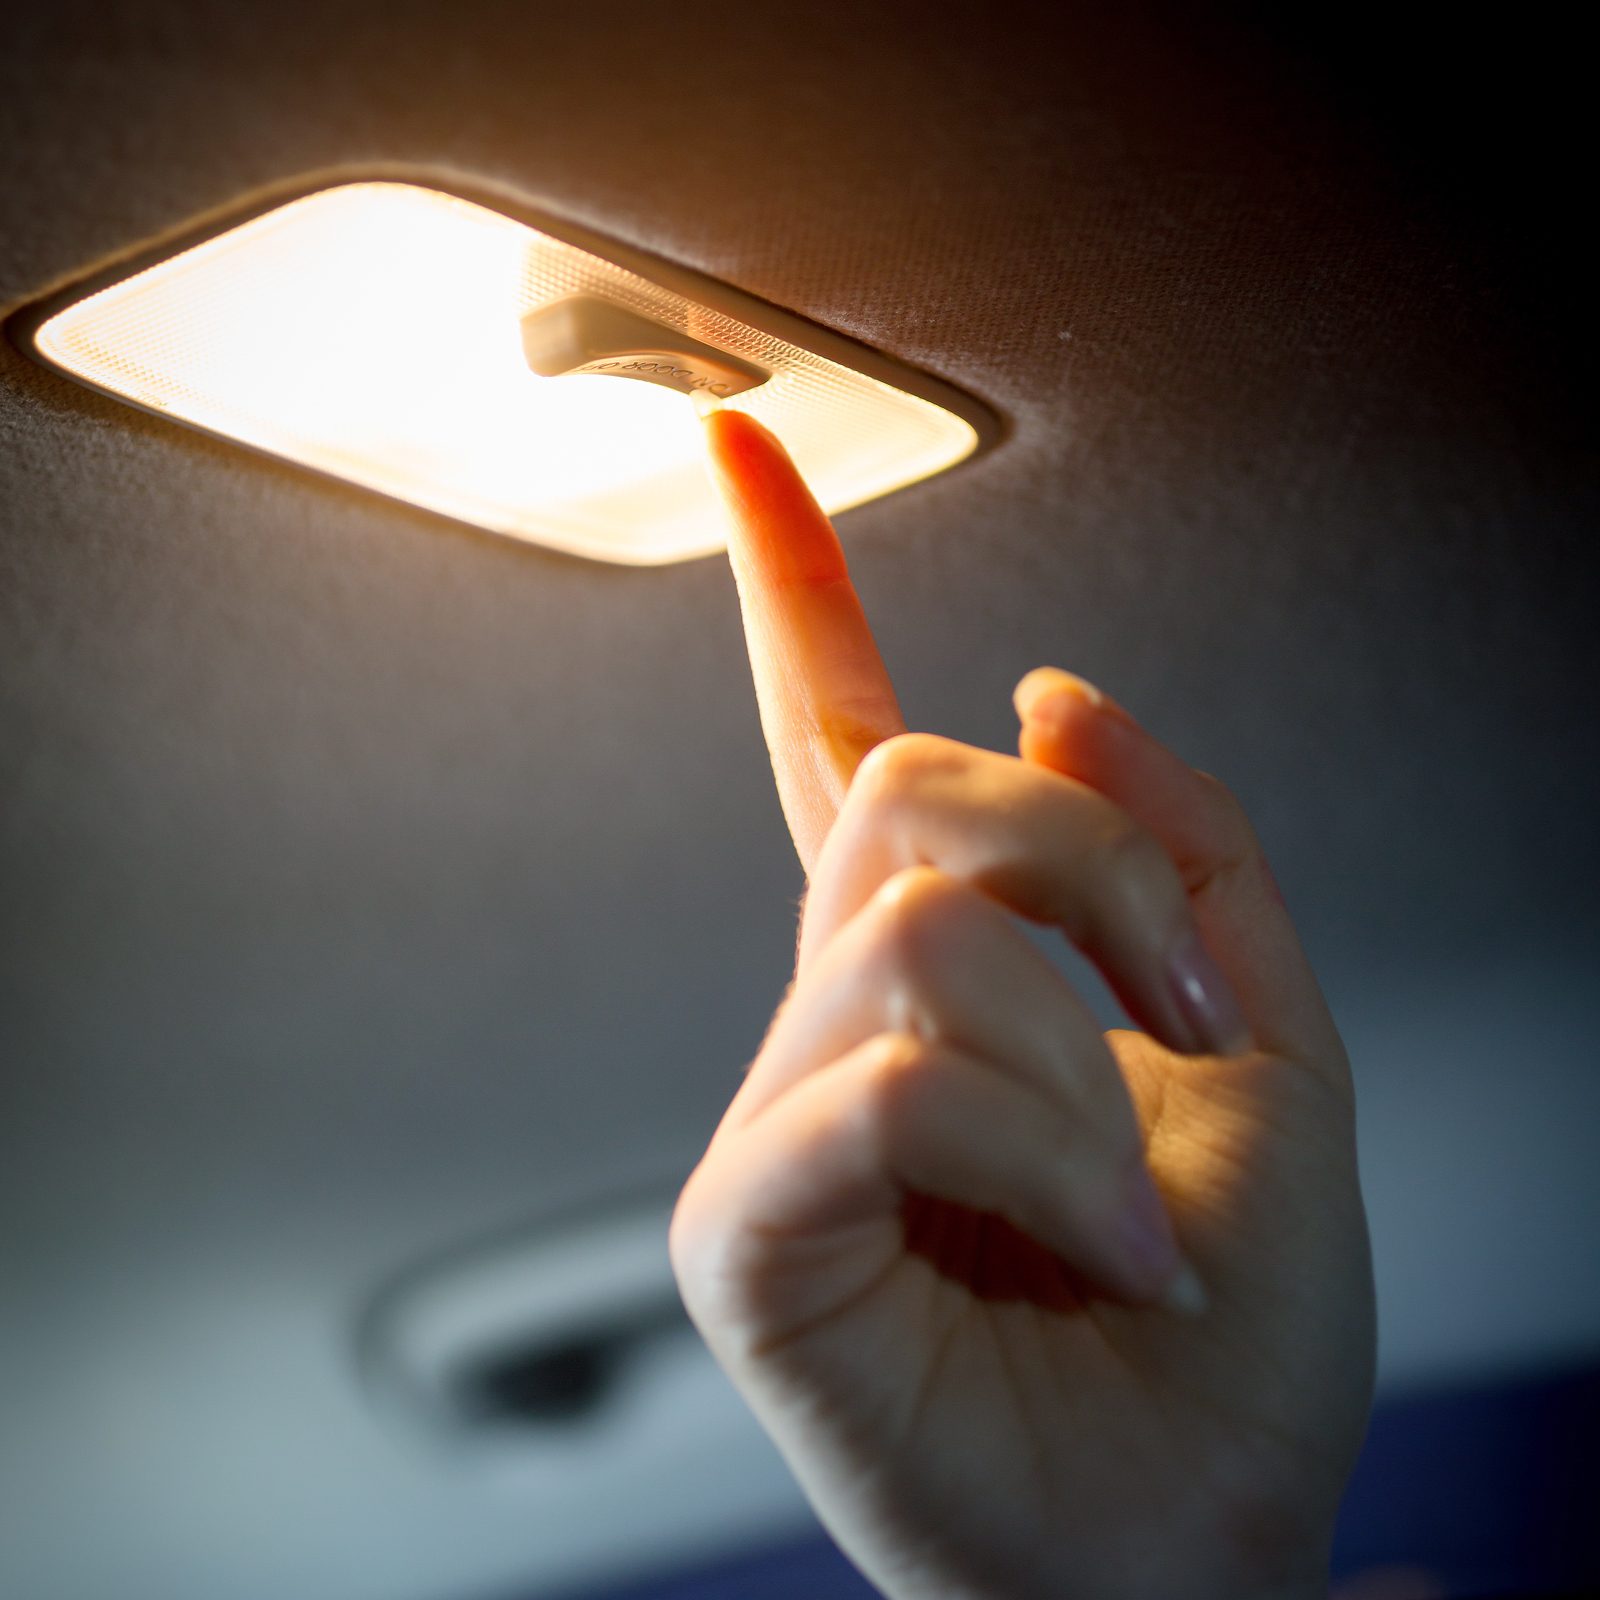 car finger light For Best Lighting 